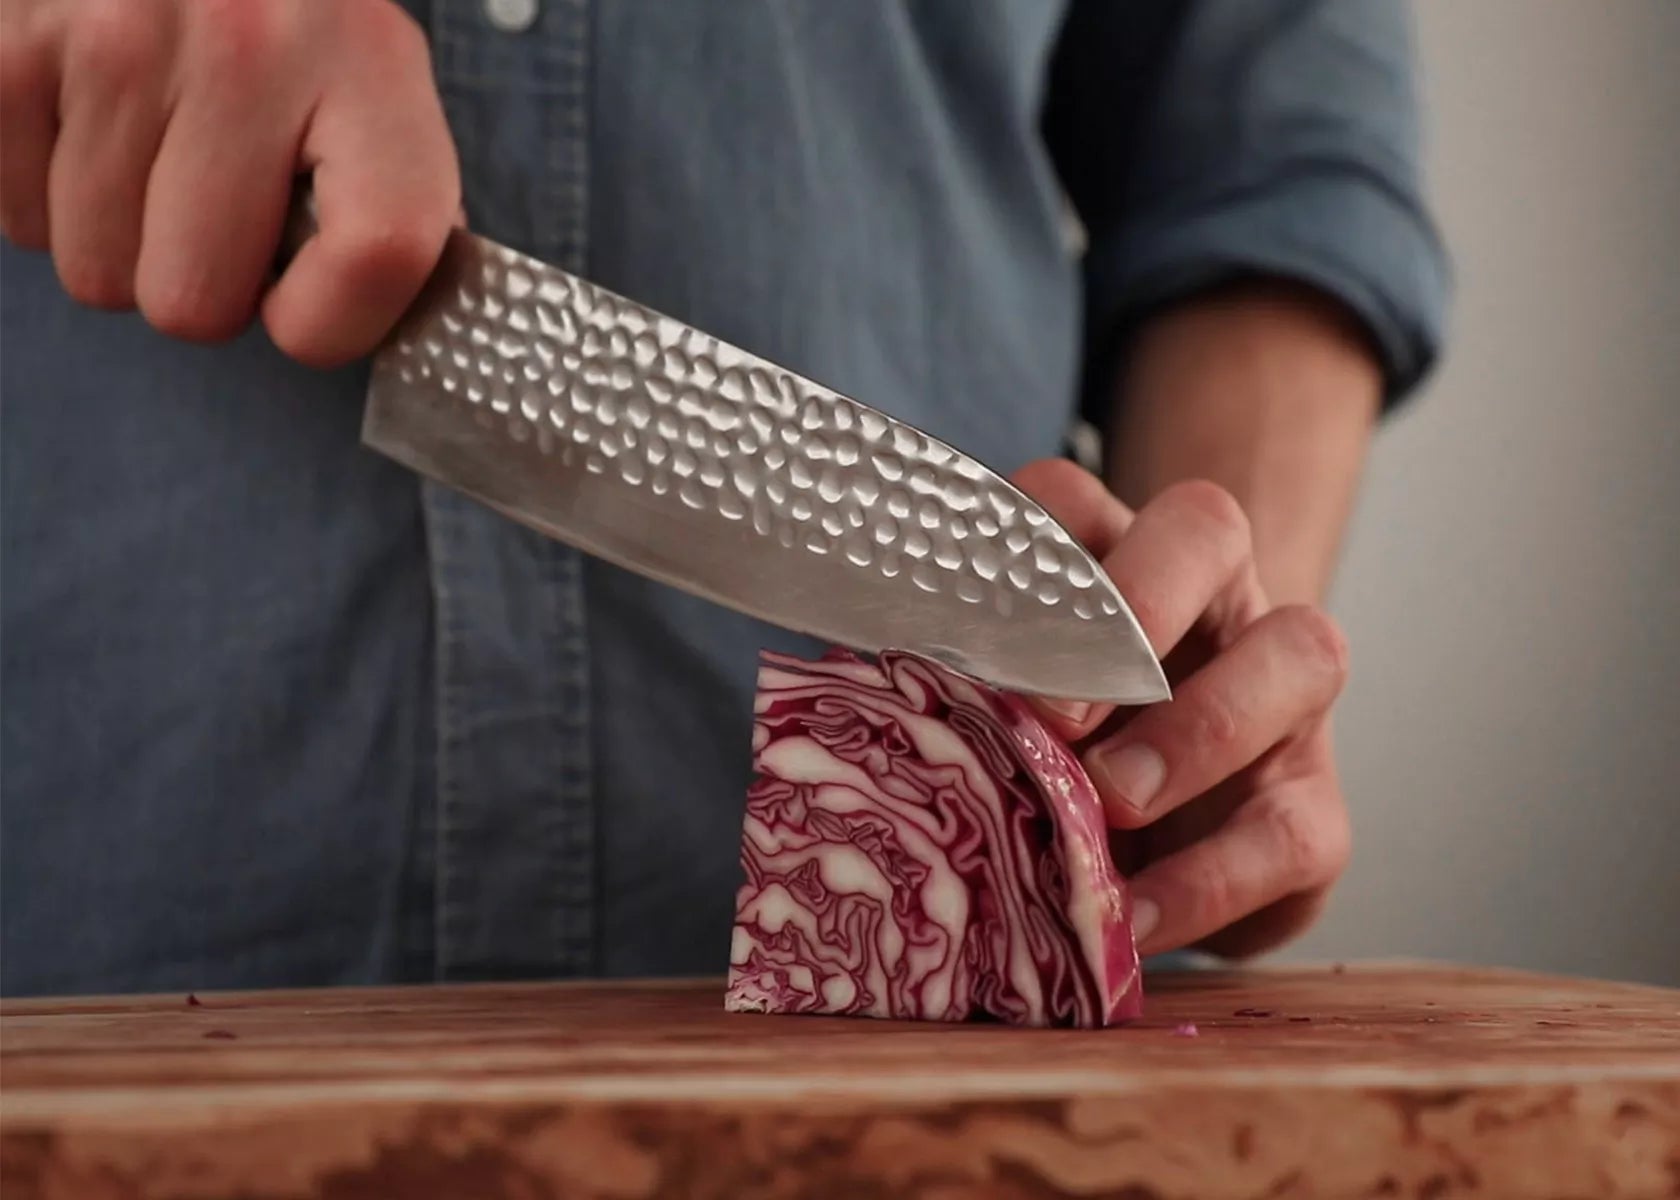 Couteau de cuisine japonais - Qualité professionnelle – CUISINE AU TOP